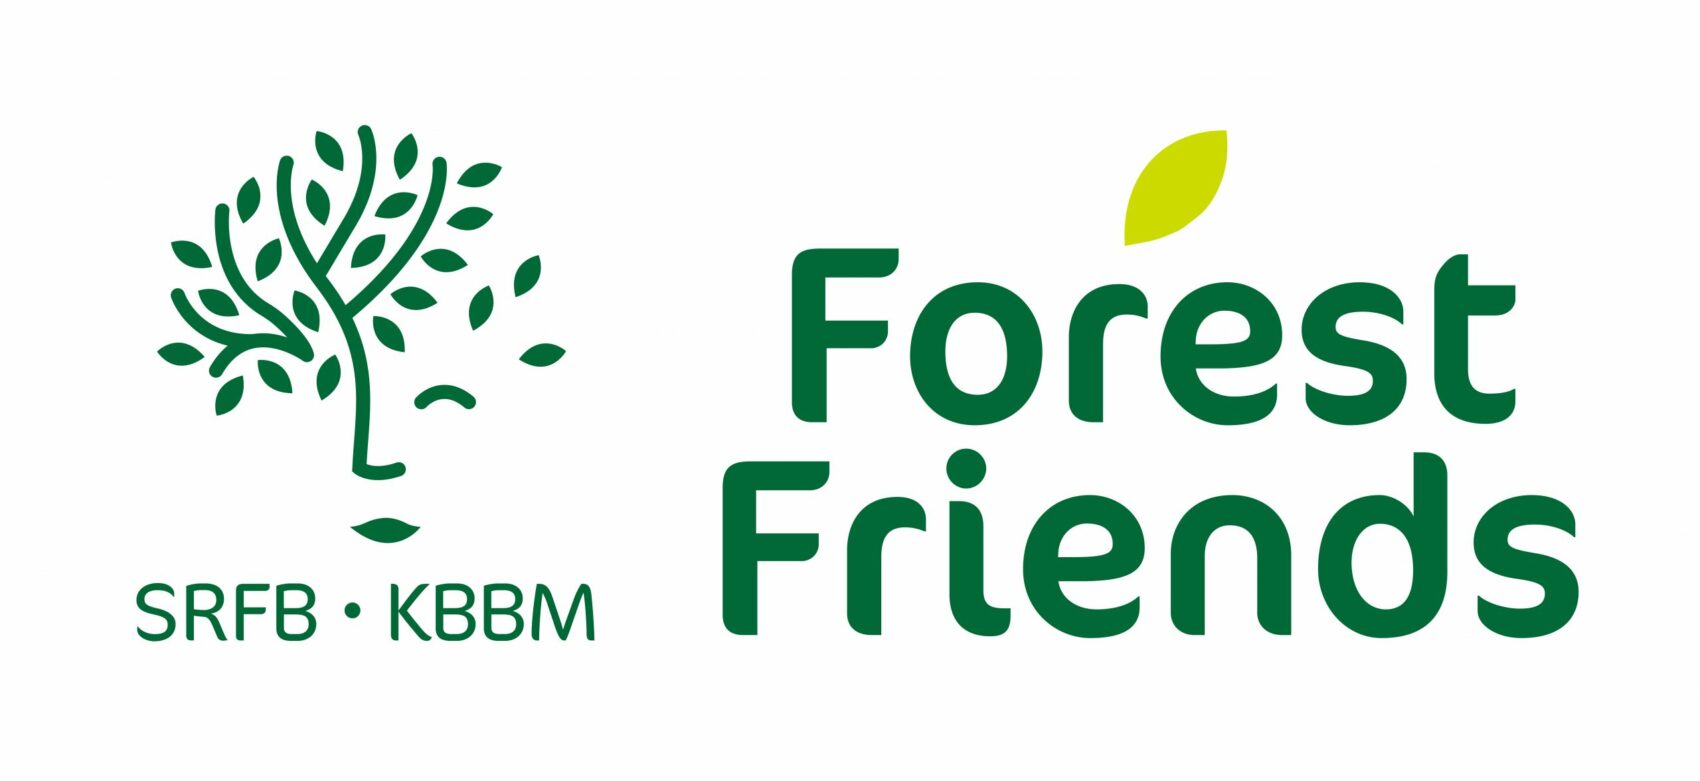 Inleiding tot bossen en bosbouw